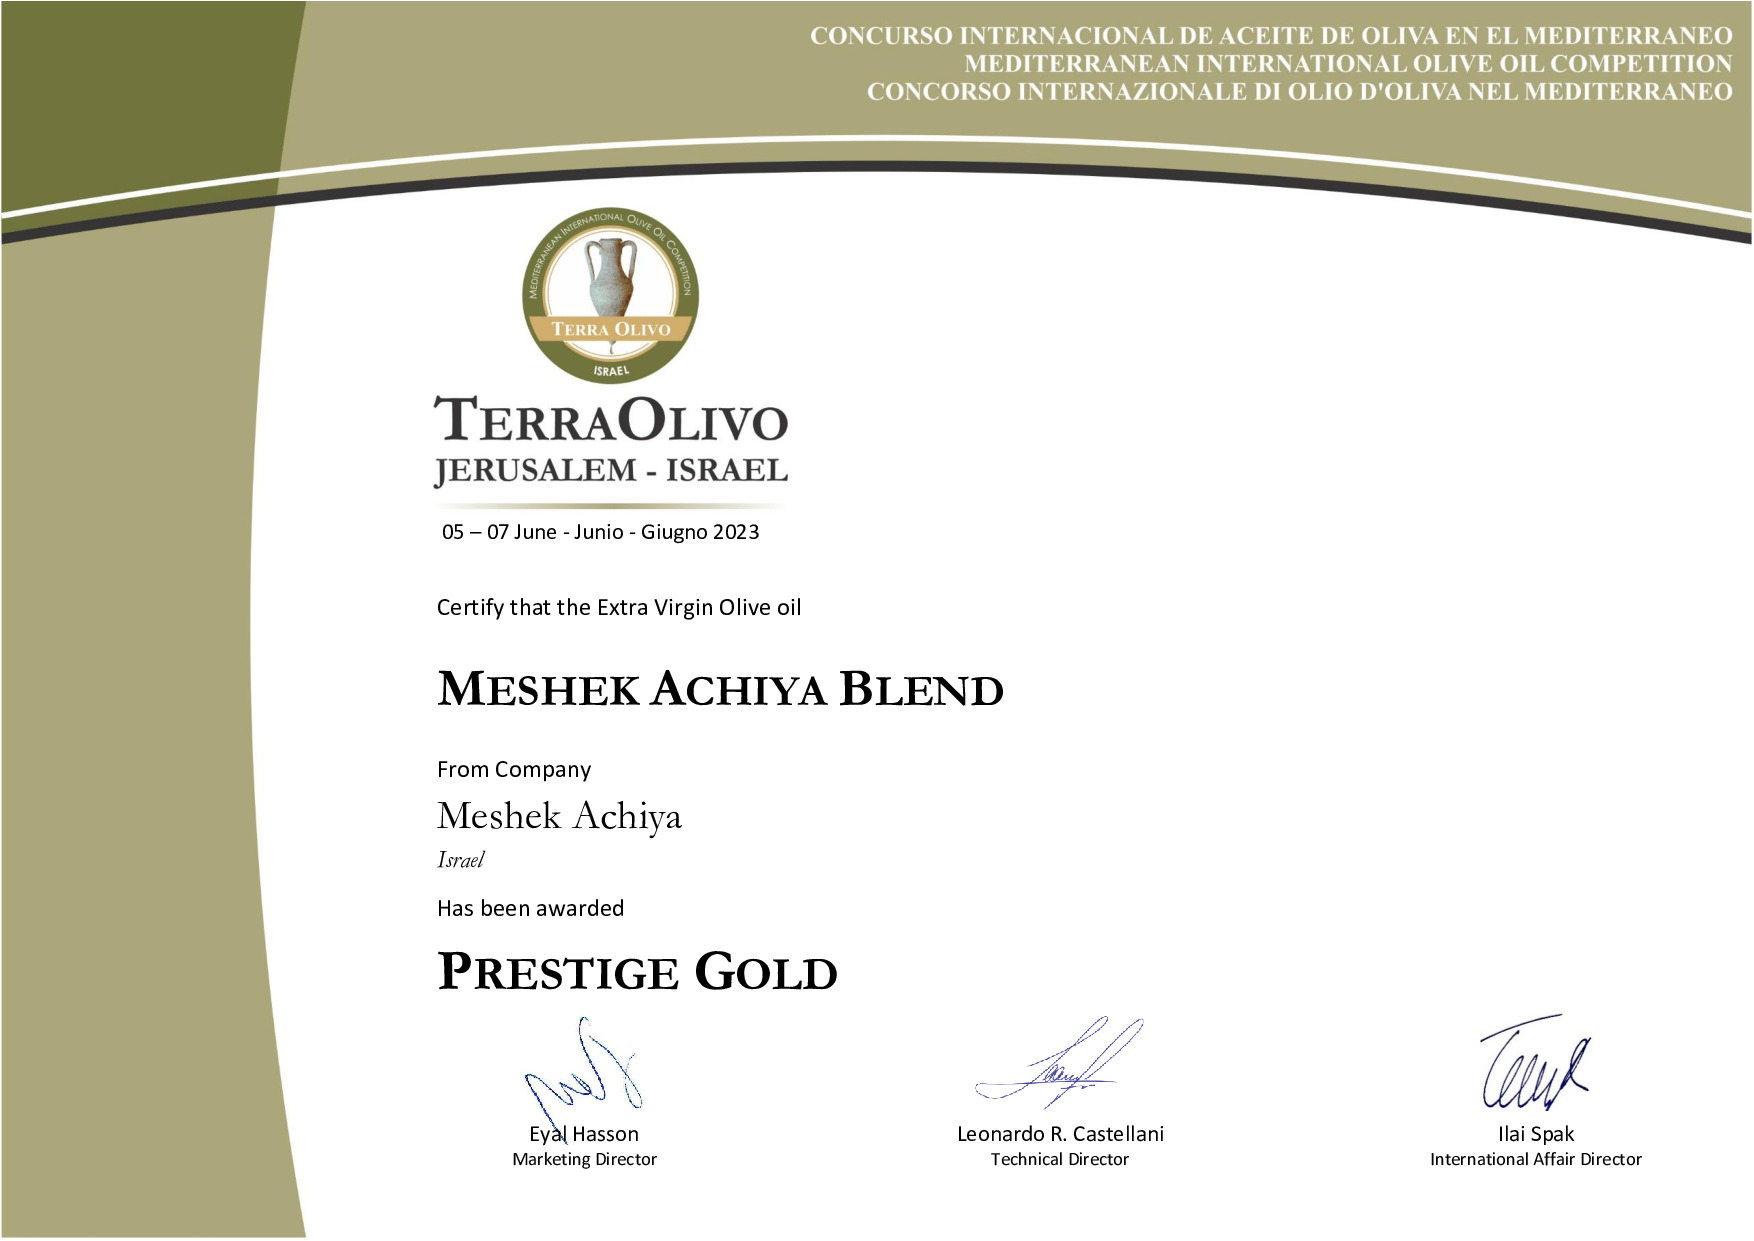 Meshek_Achiya_Blend_Prestige_Gold